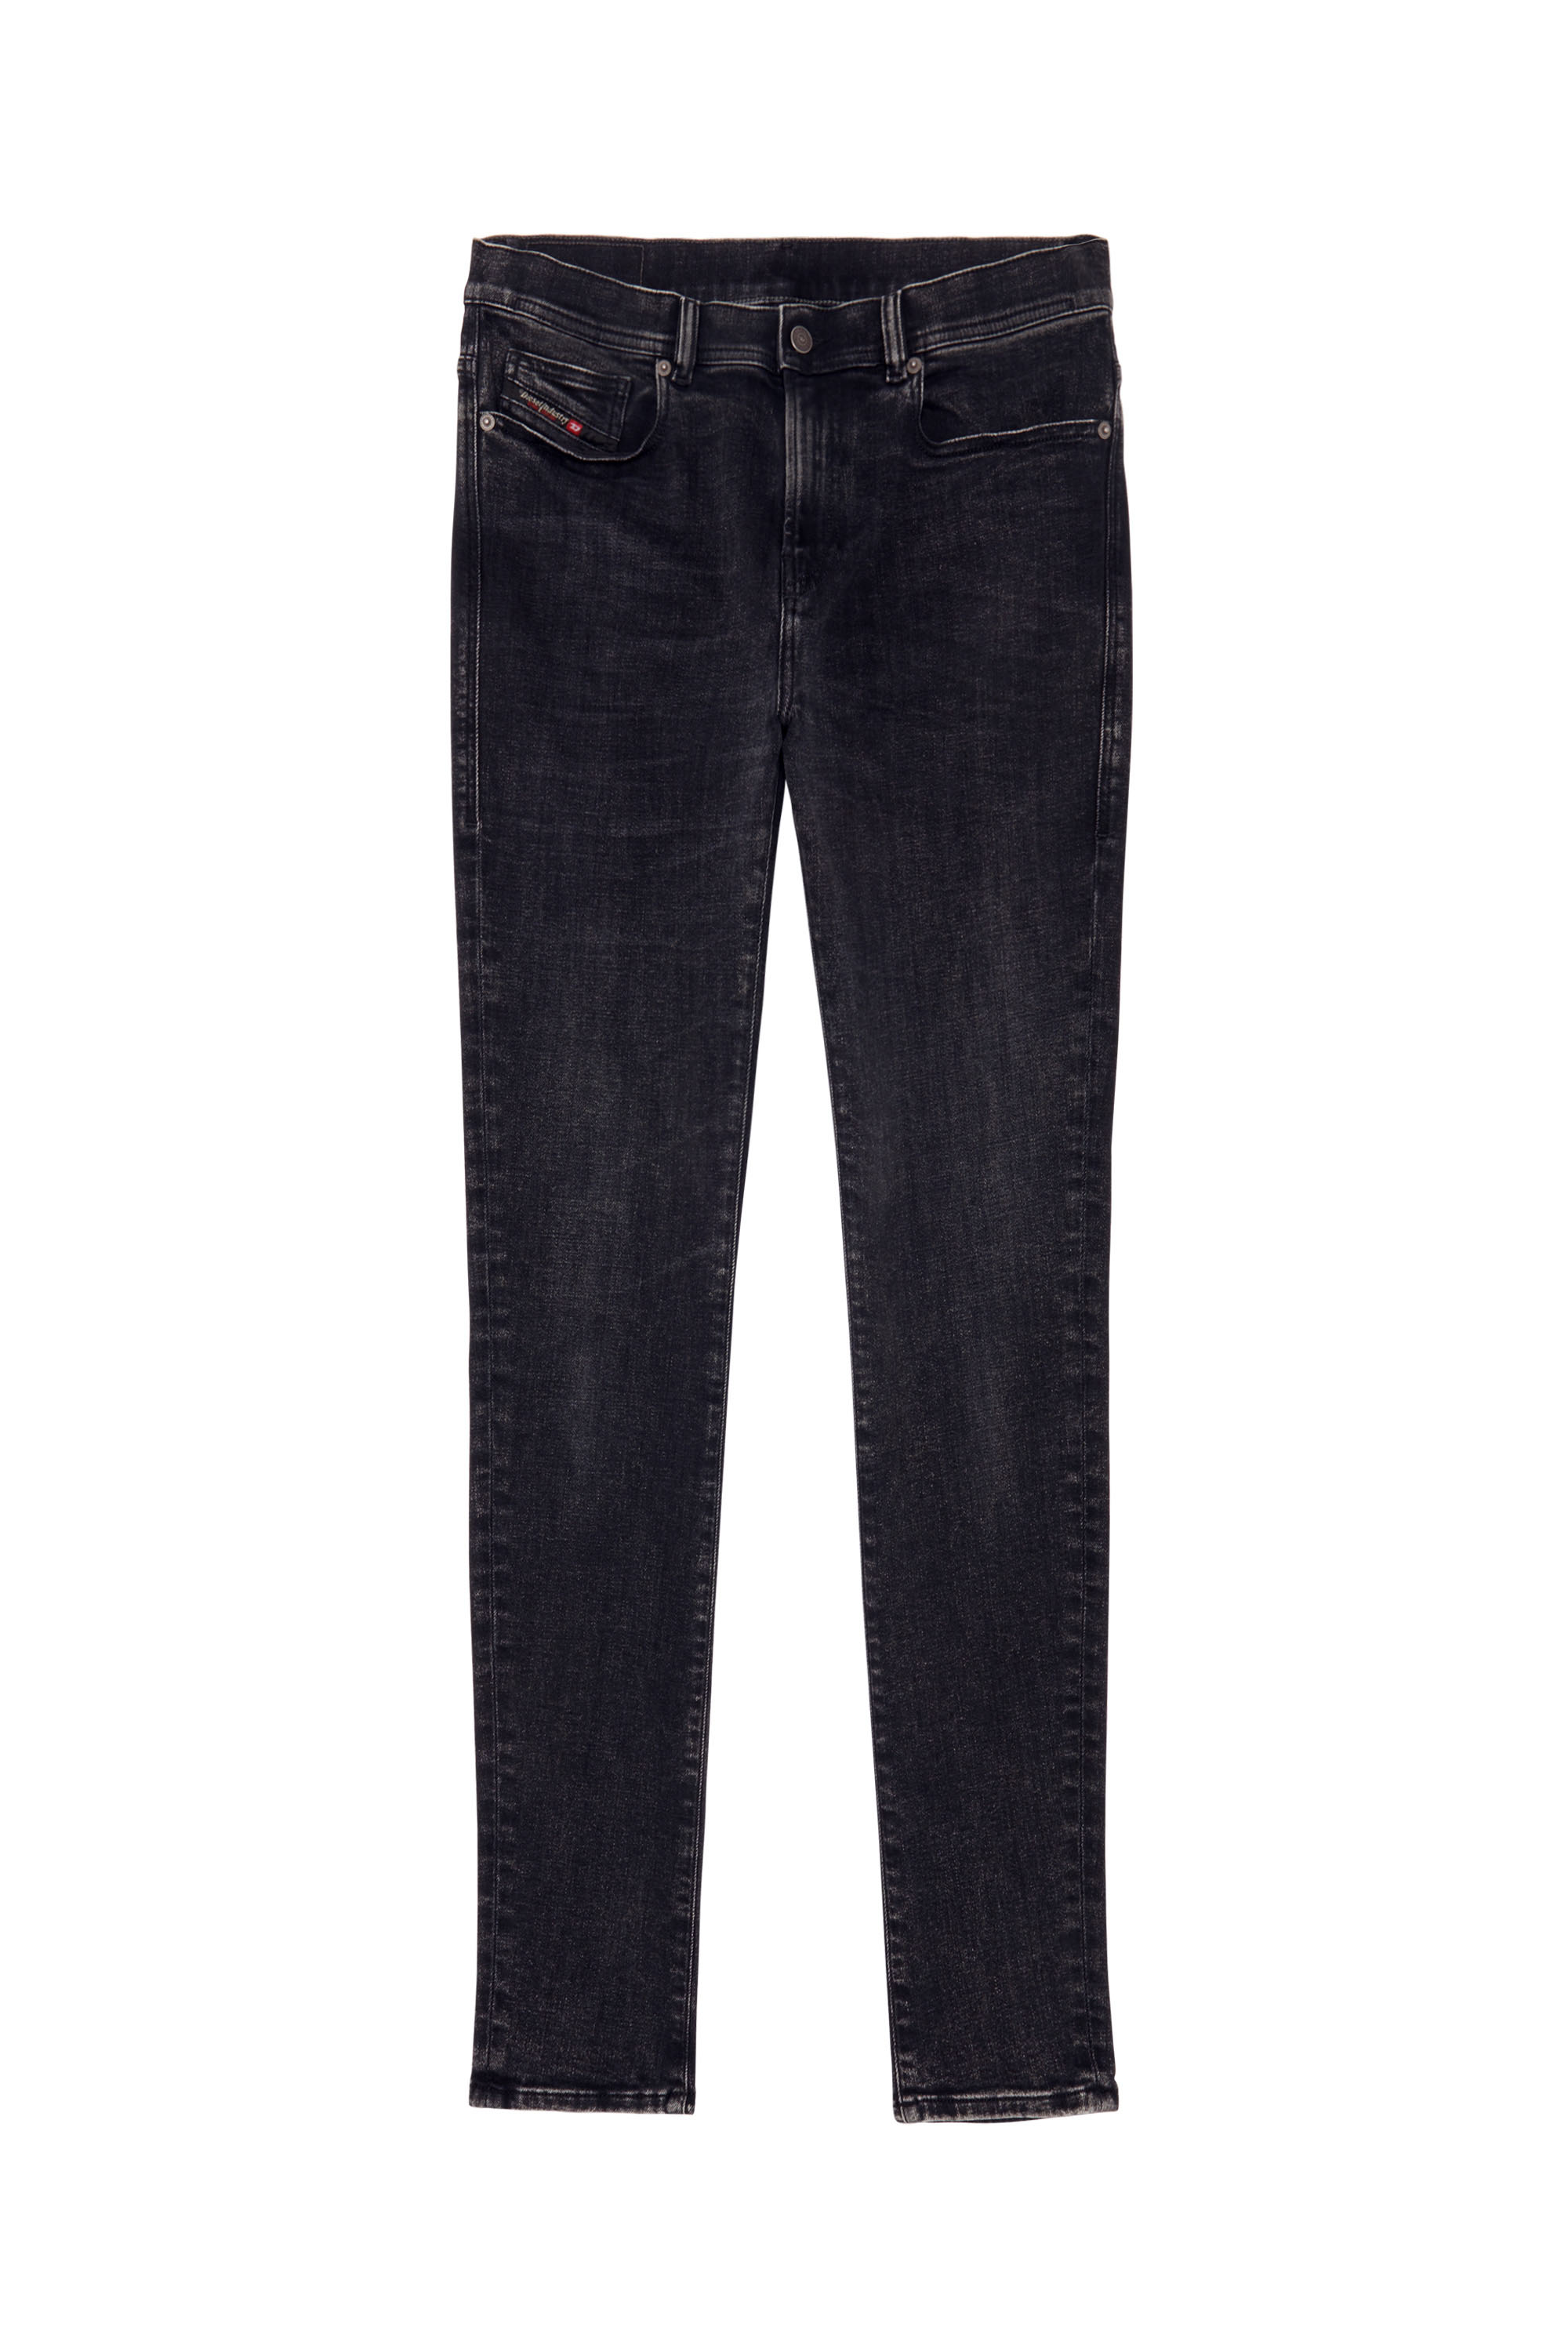 1983 09C23 Skinny Jeans, Schwarz/Dunkelgrau - Jeans